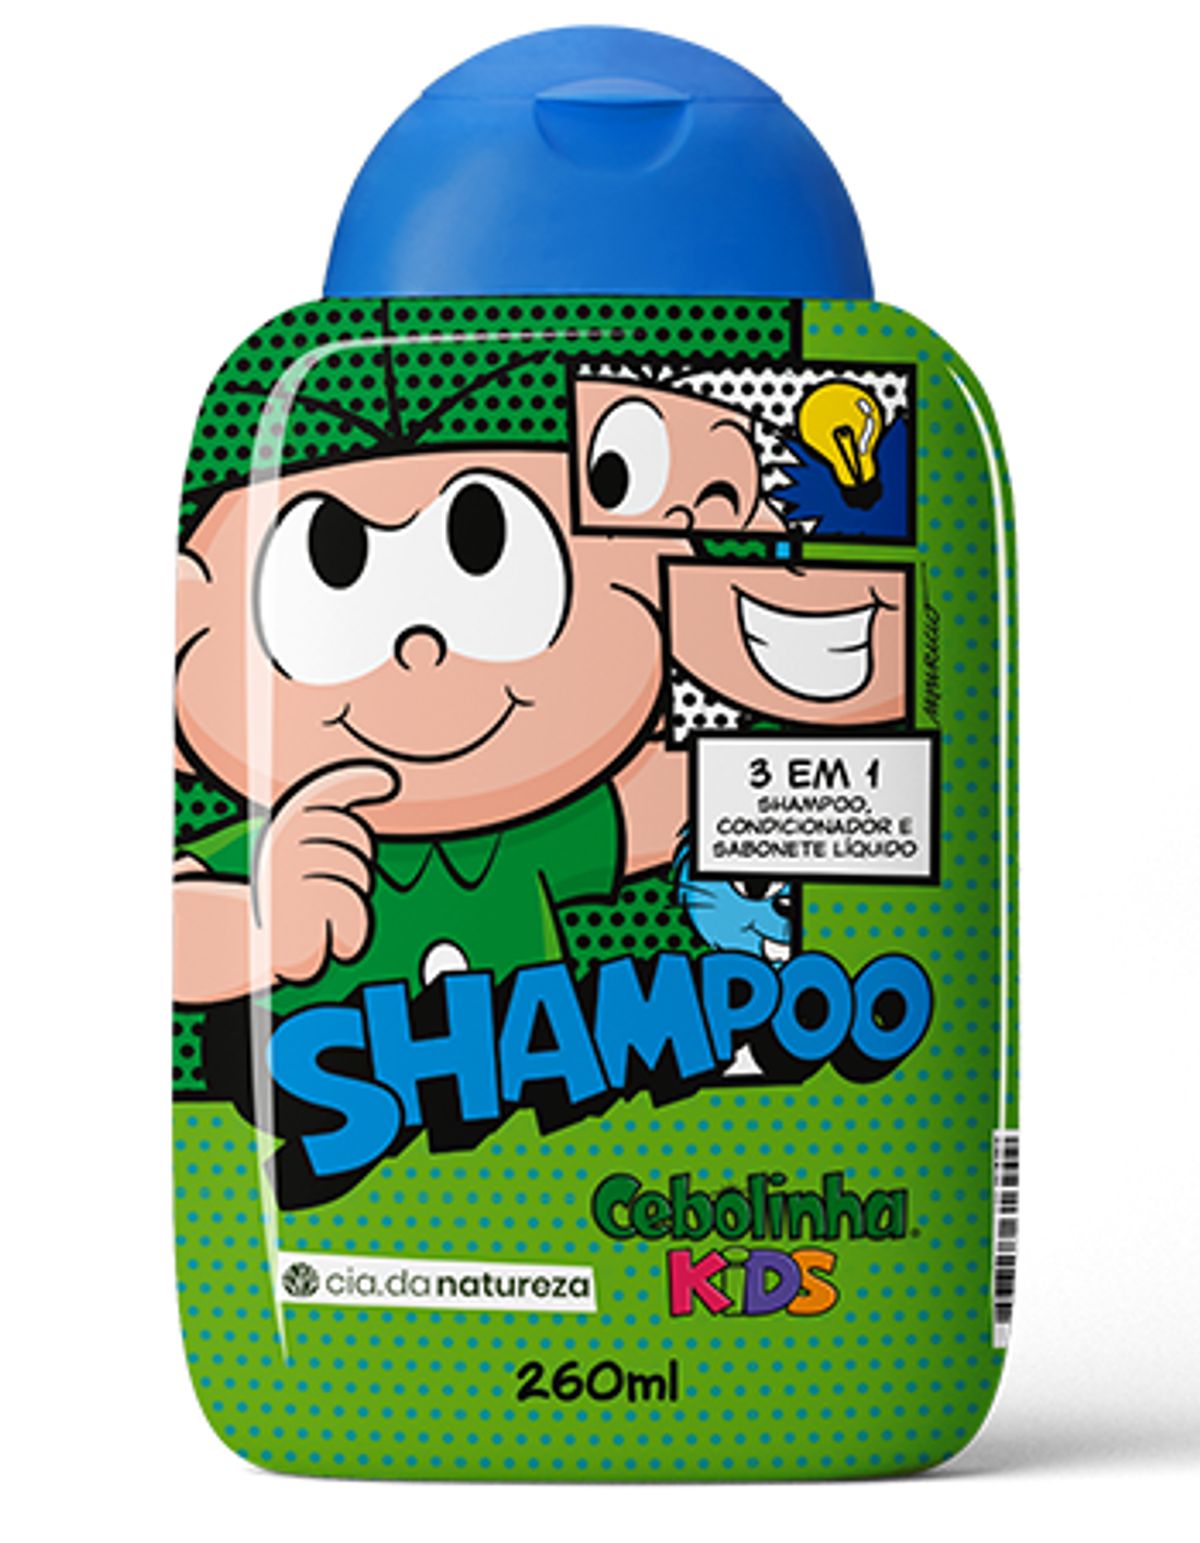 Shampoo 3 em 1 Cebolinha Kids 260ml image number 0